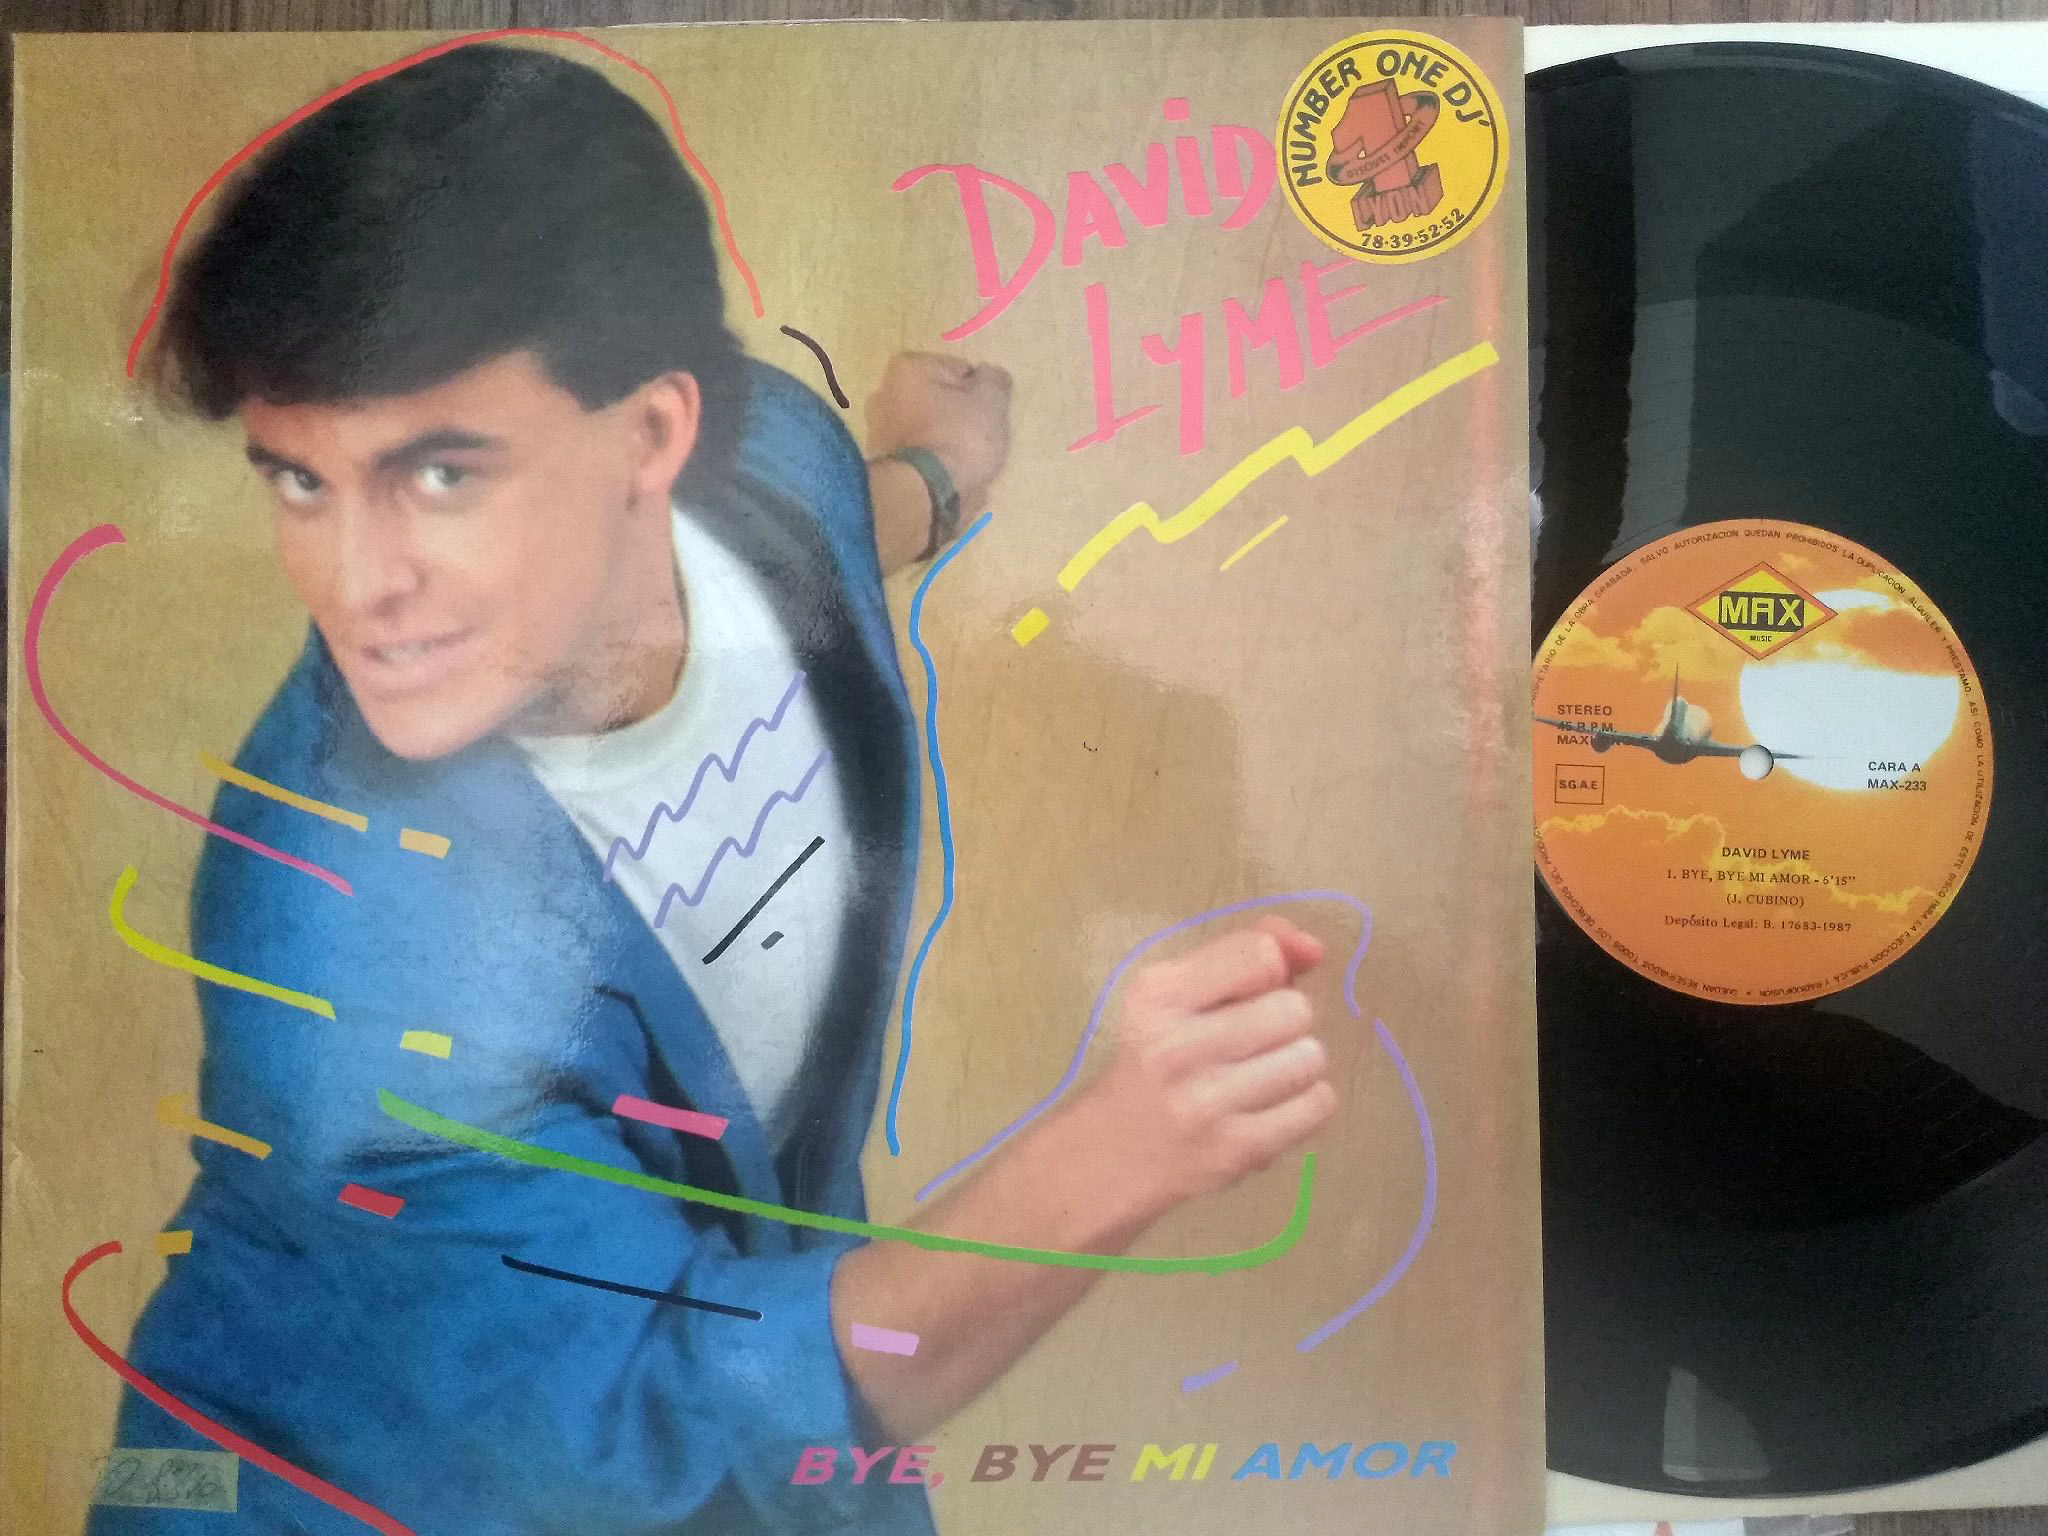 David Lyme - Bye, Bye Mi Amor